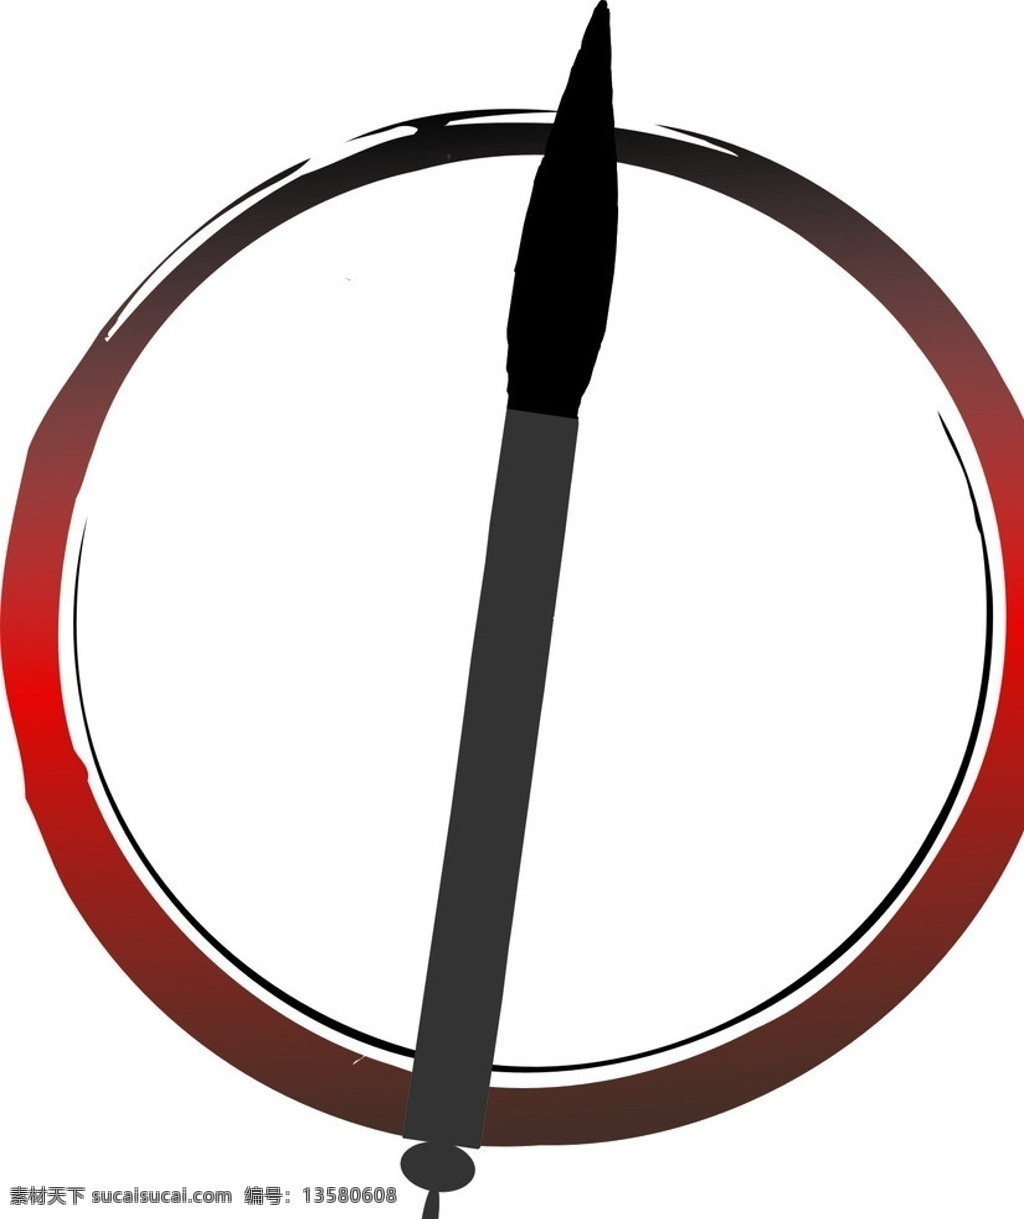 毛笔 中国风 墨水圈 企业 logo 标志 标识标志图标 矢量